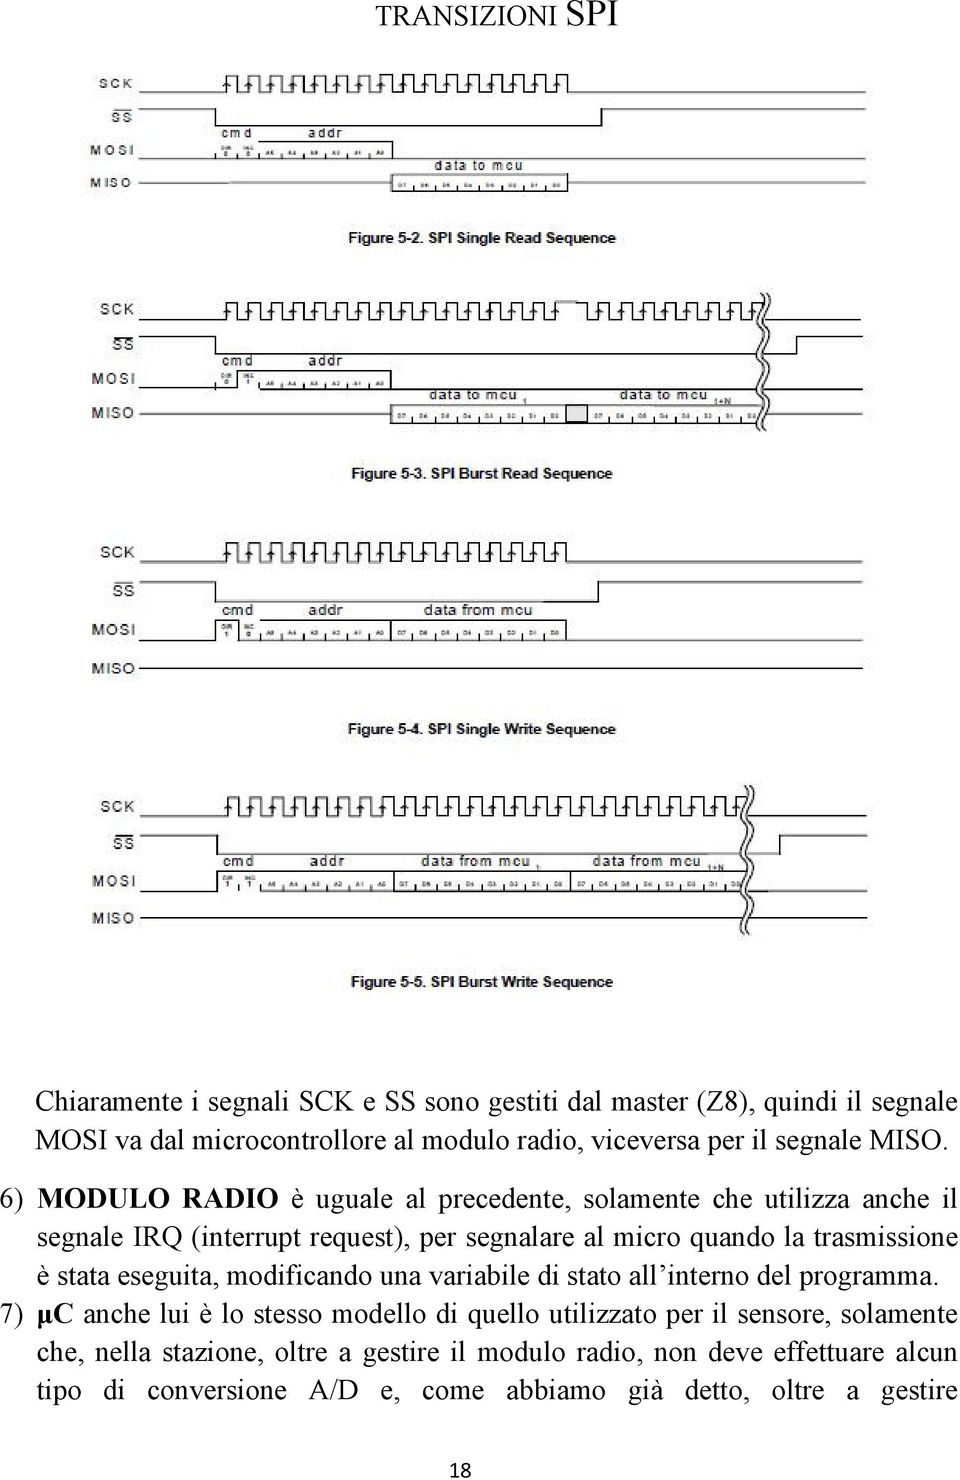 6) MODULO RADIO è uguale al precedente, solamente che utilizza anche il segnale IRQ (interrupt request), per segnalare al micro quando la trasmissione è stata